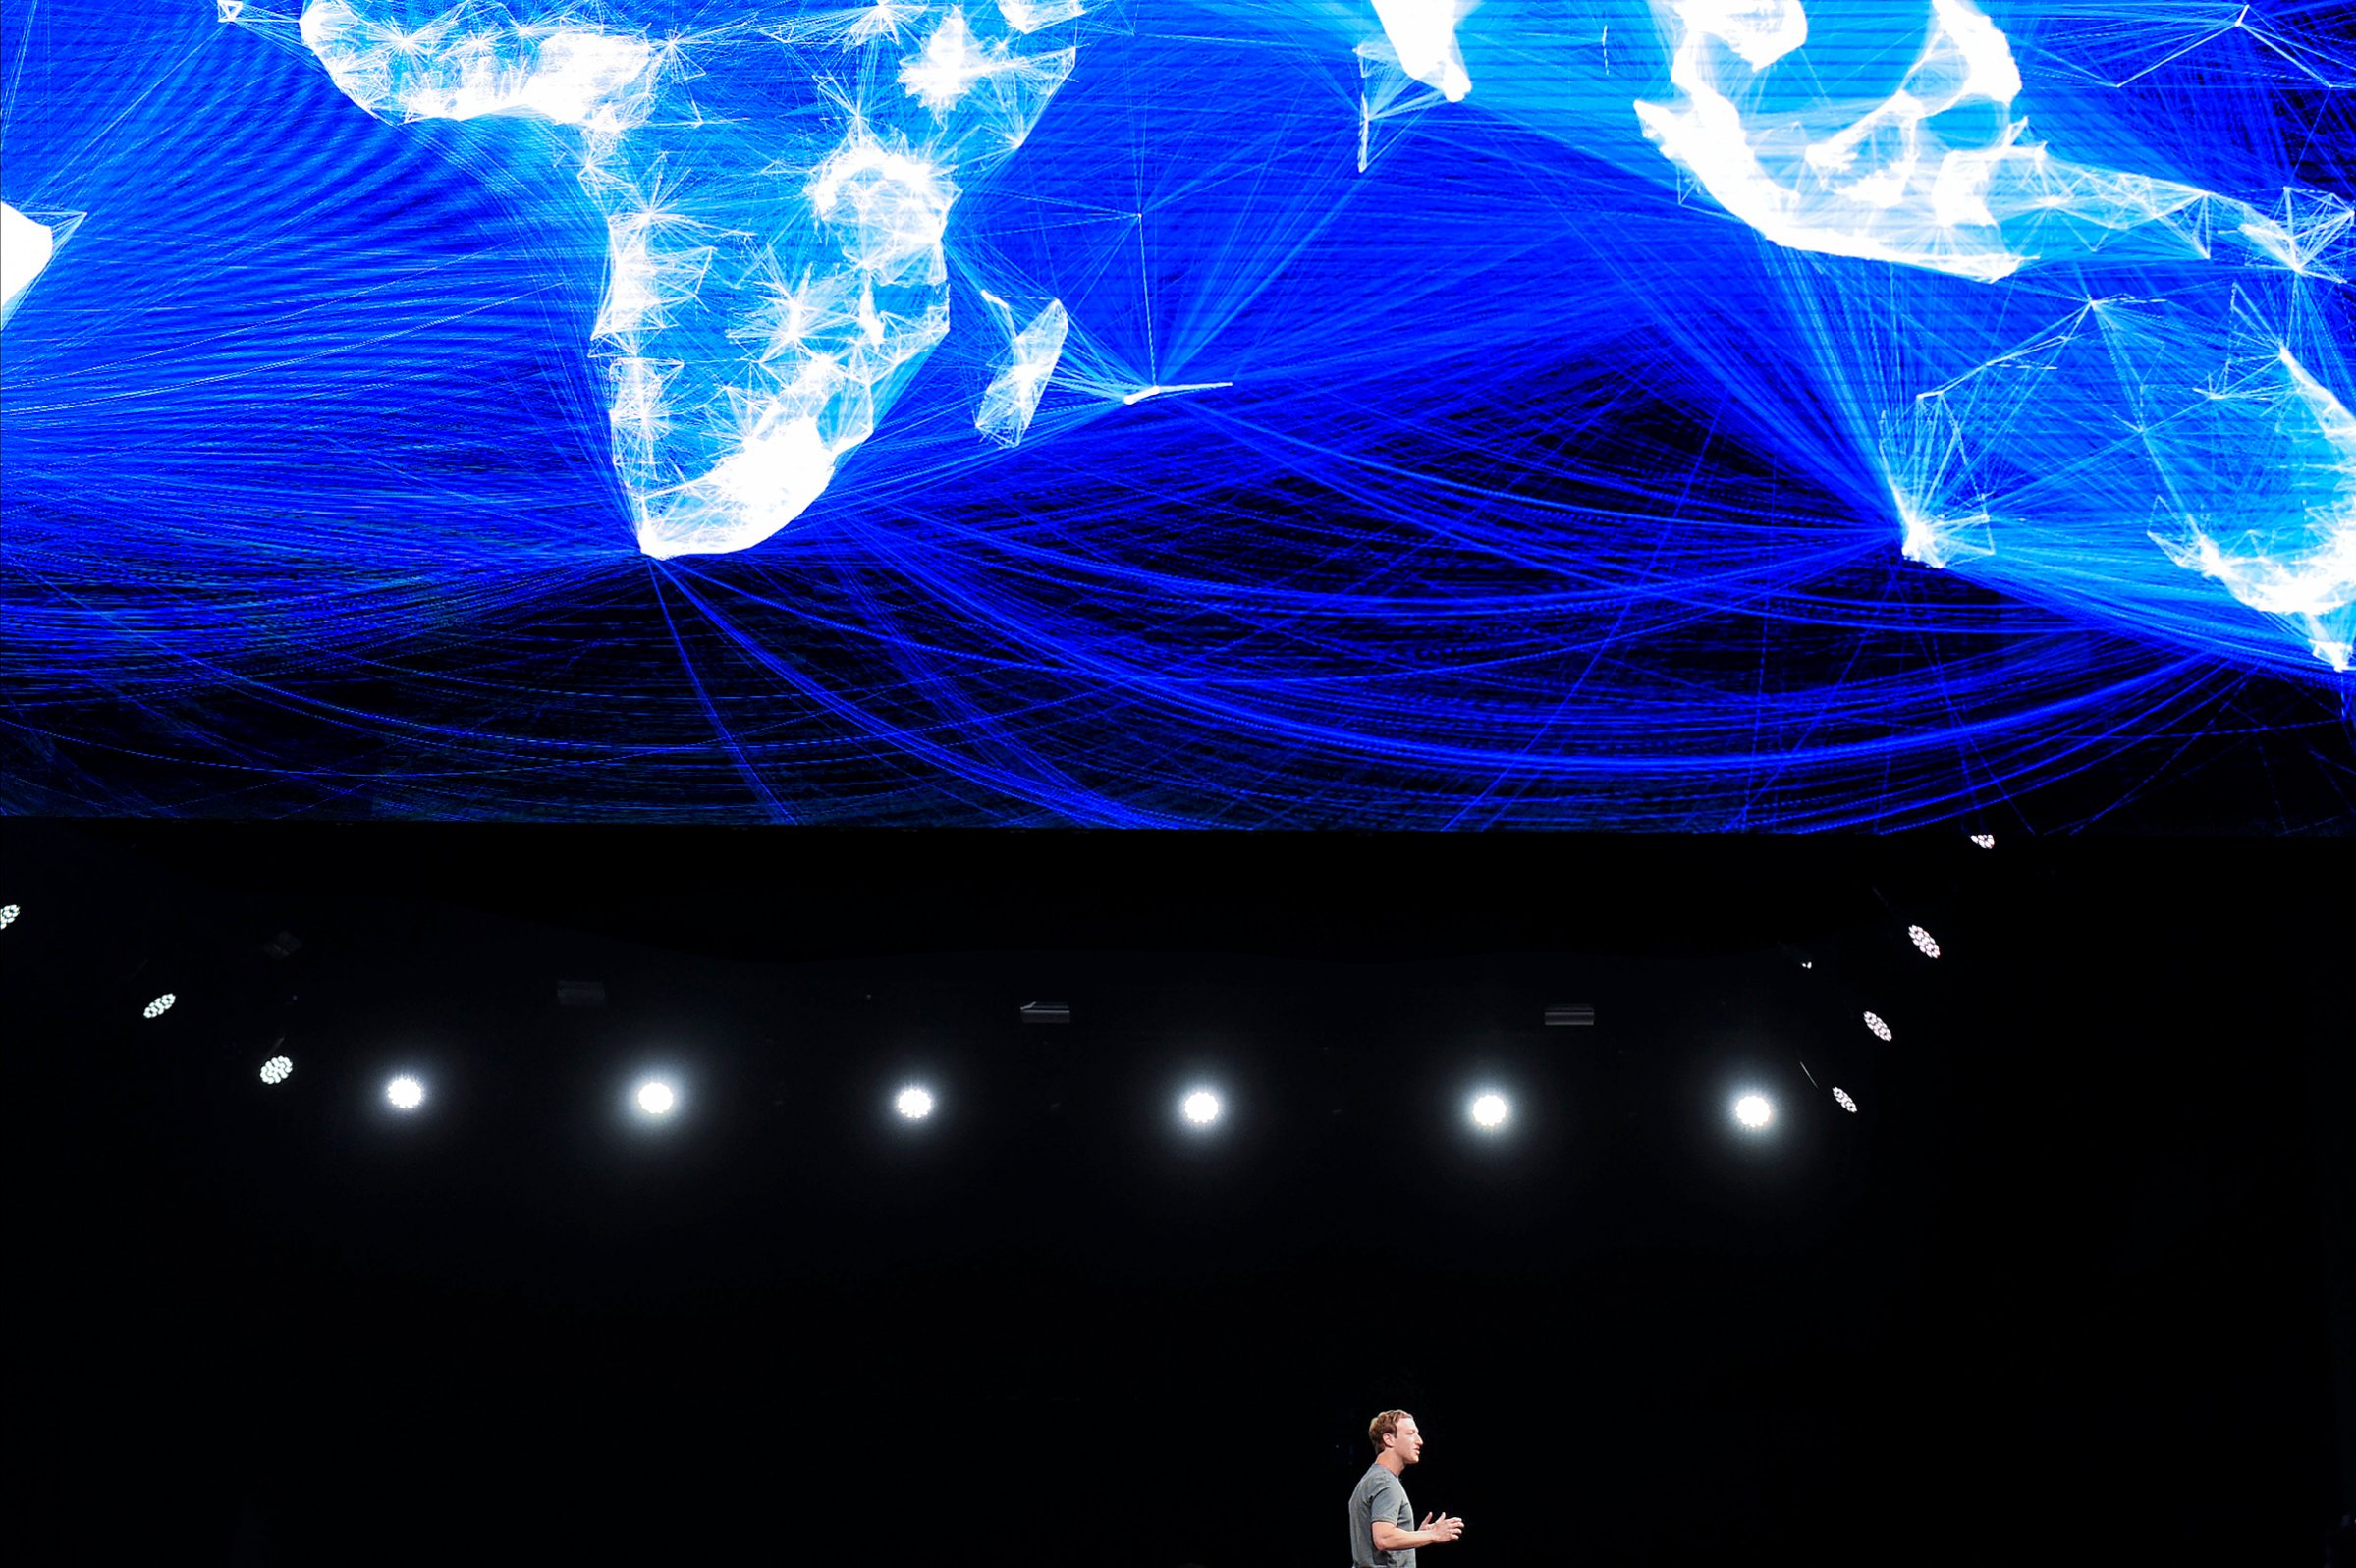 Mark Zuckerberg speaks during a presentation